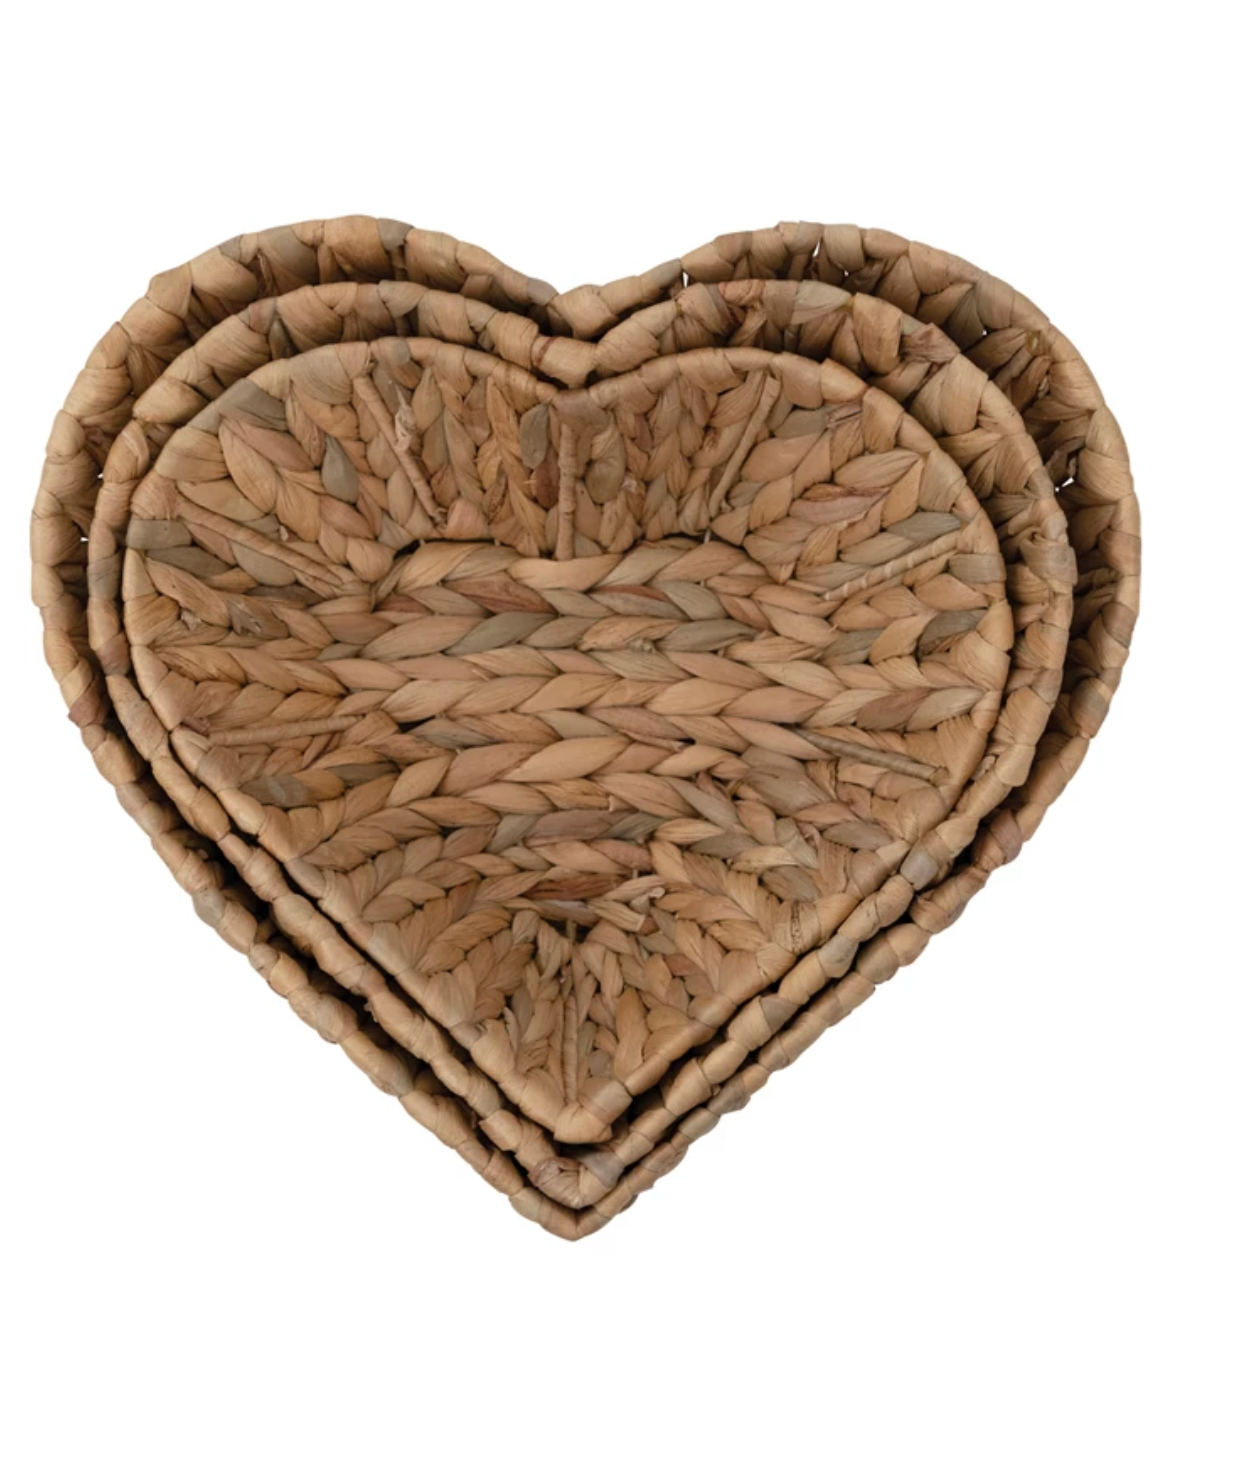 Hand Woven Heart Basket